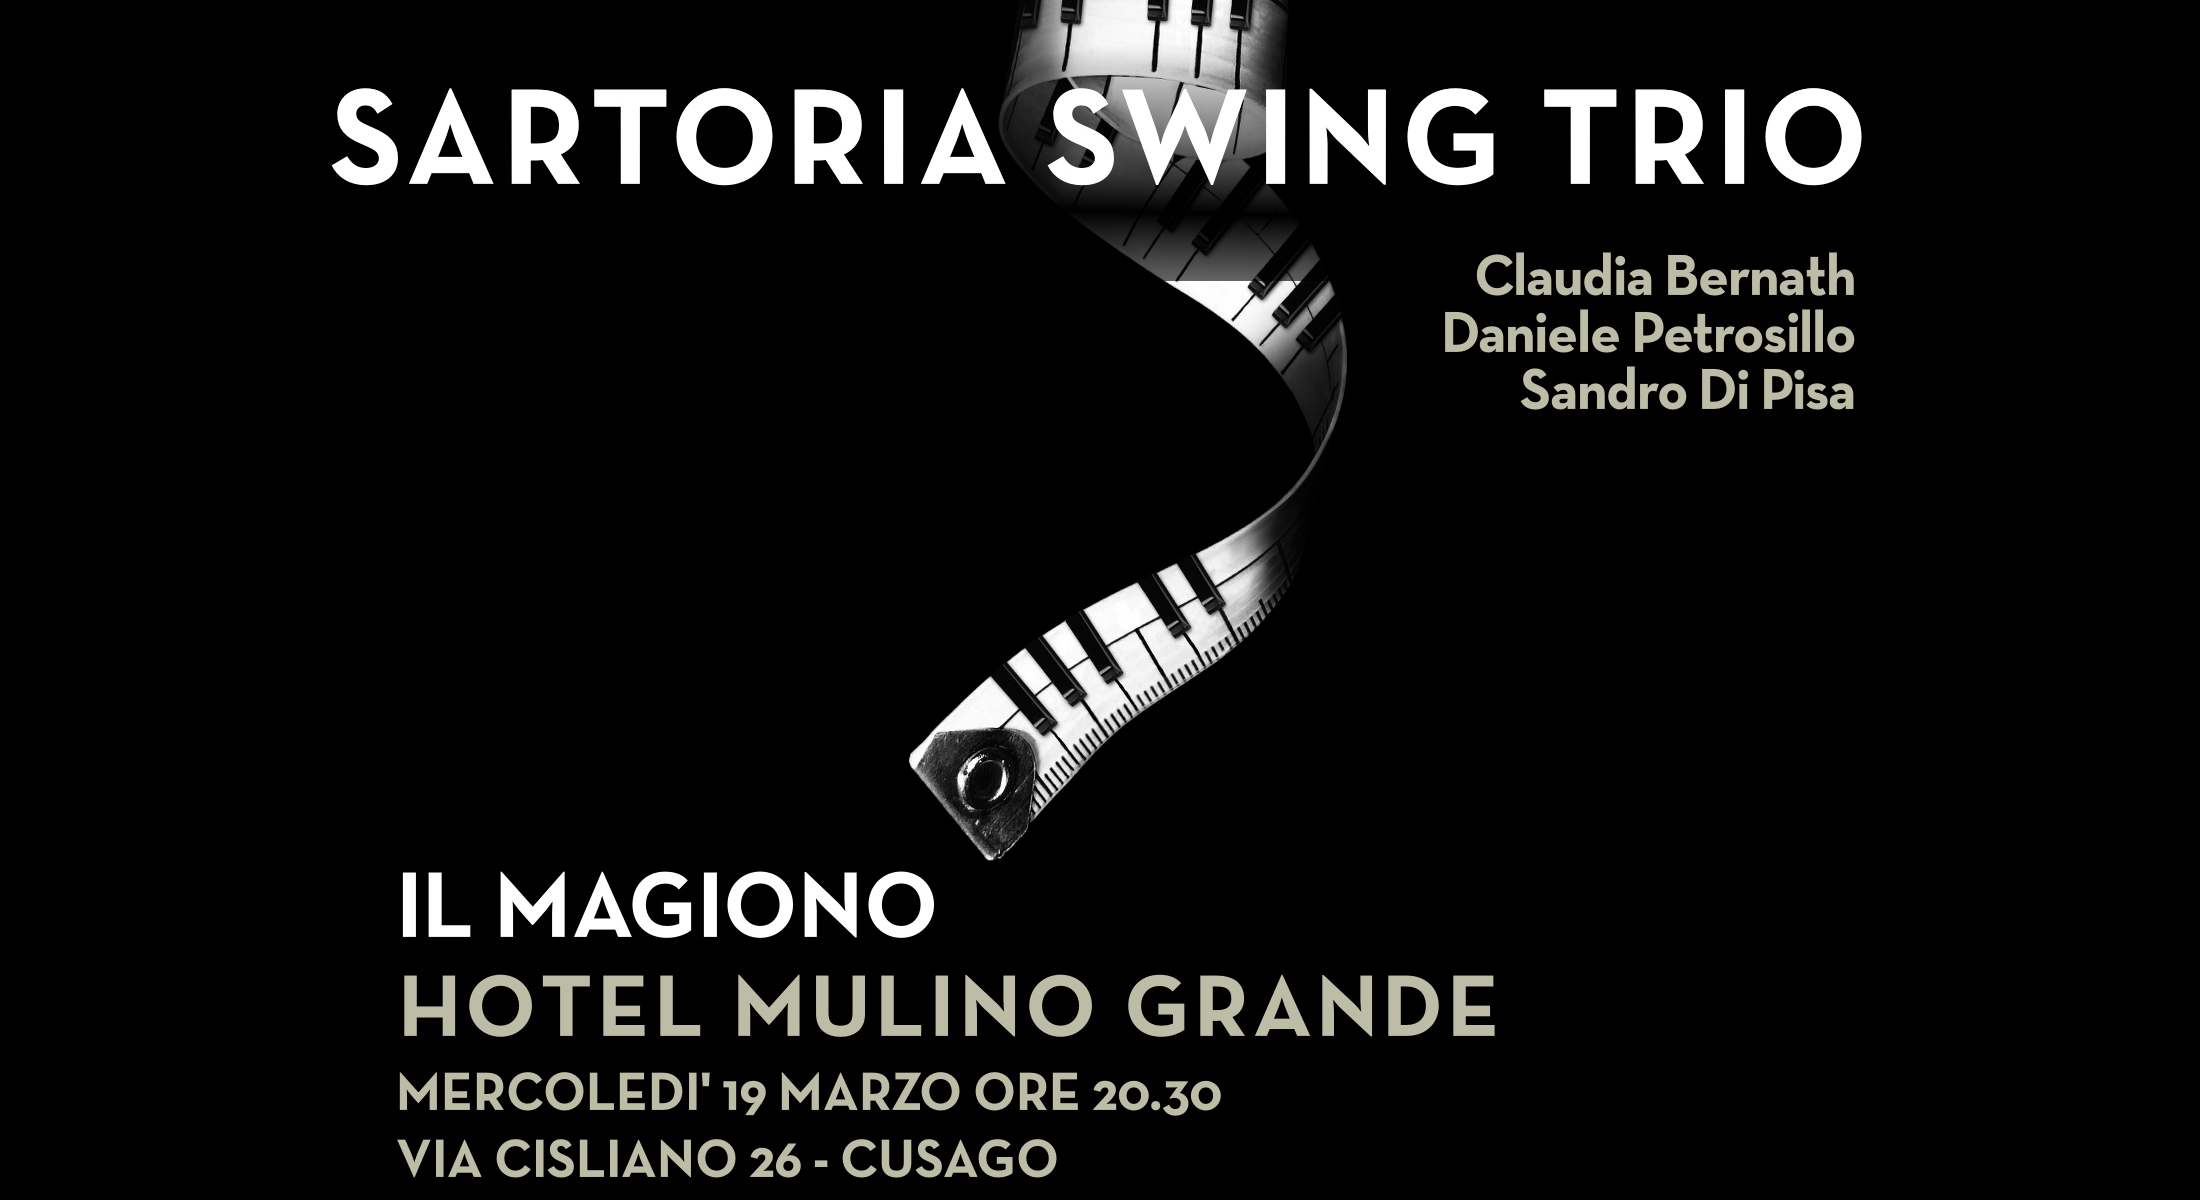 19 MARZO CON SARTORIA SWING TRIO @ HOTEL MULINO GRANDE